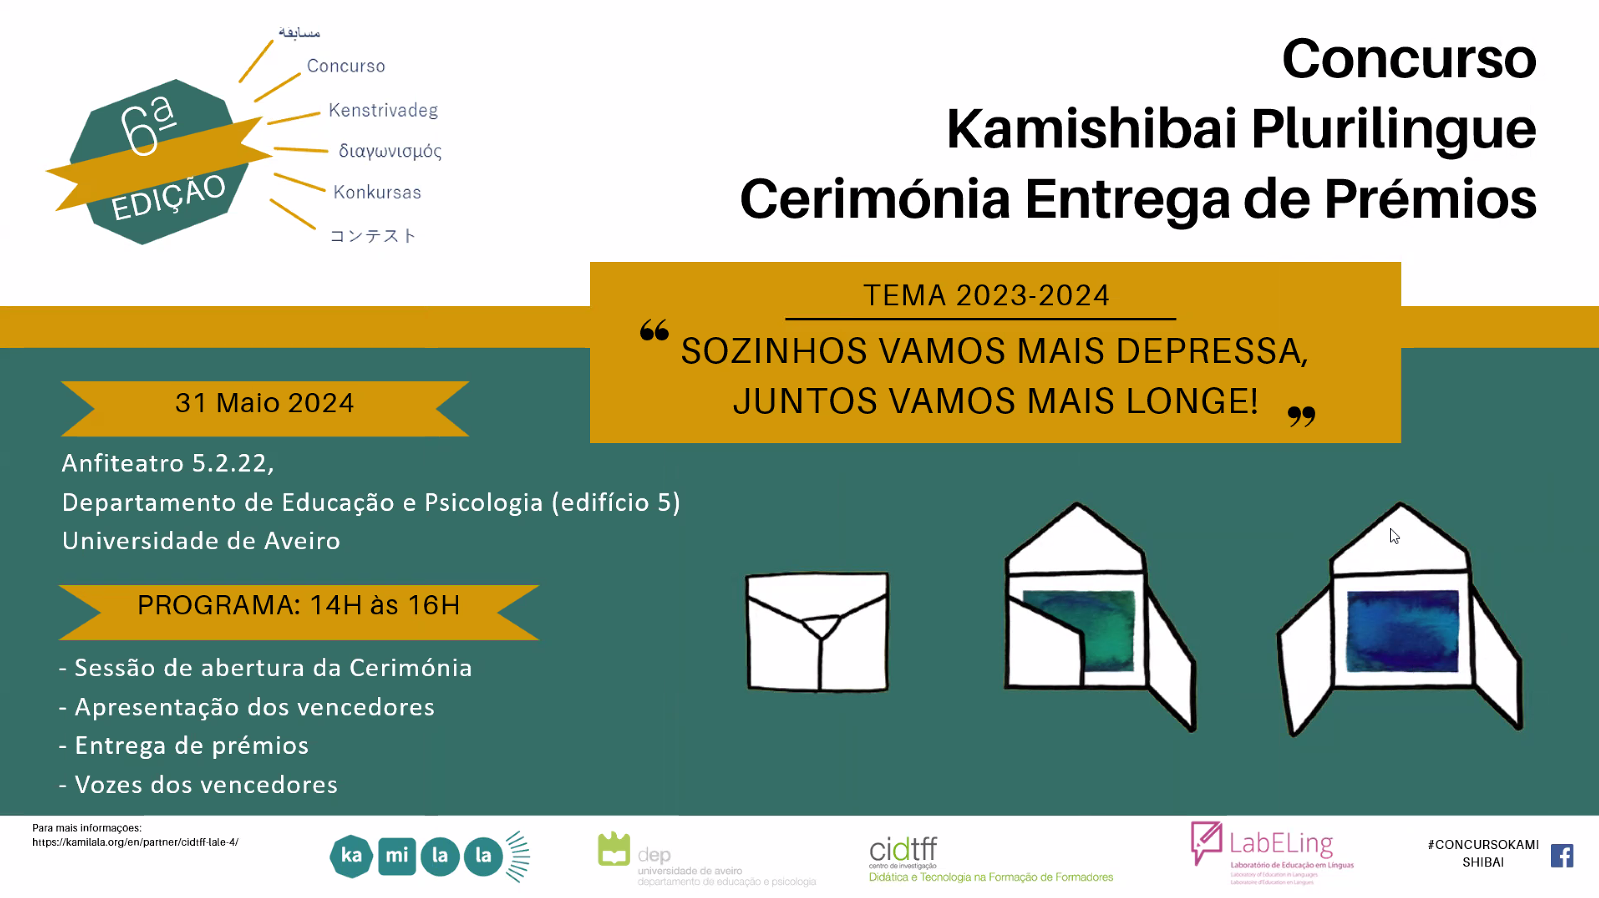 Cerimónia de Entrega de Prémios da 6ª Edição do Concurso Kamishibai Plurilingue Portugal